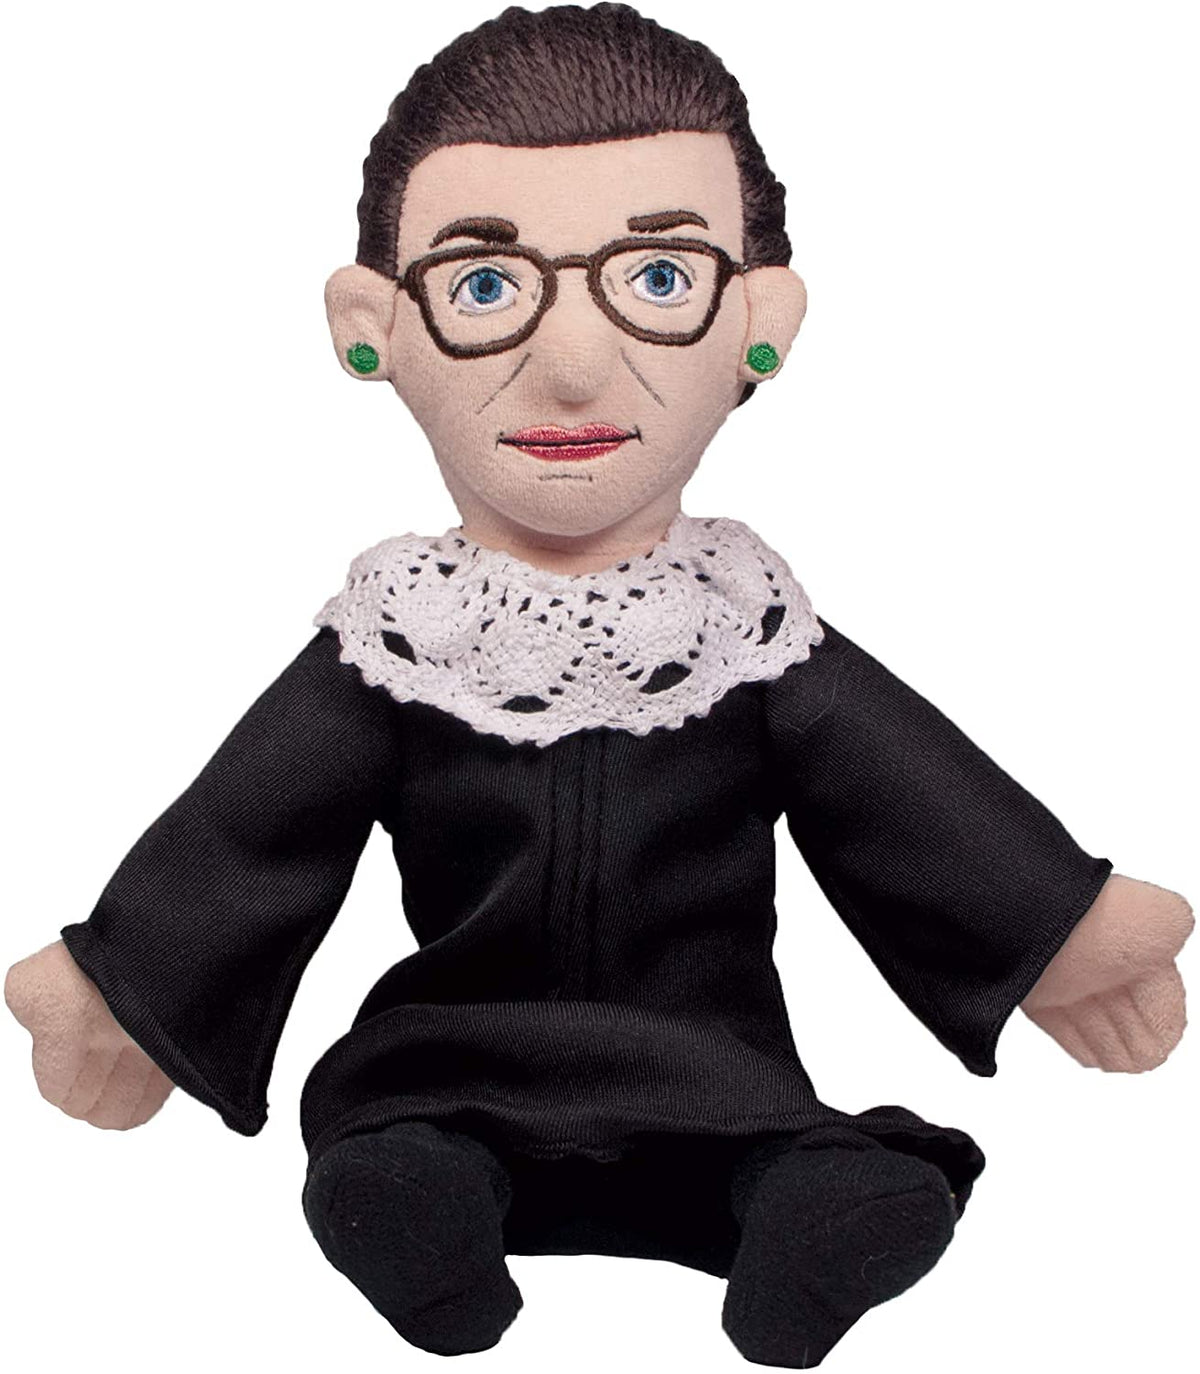 Ruth Bader Ginsburg Cloth Doll